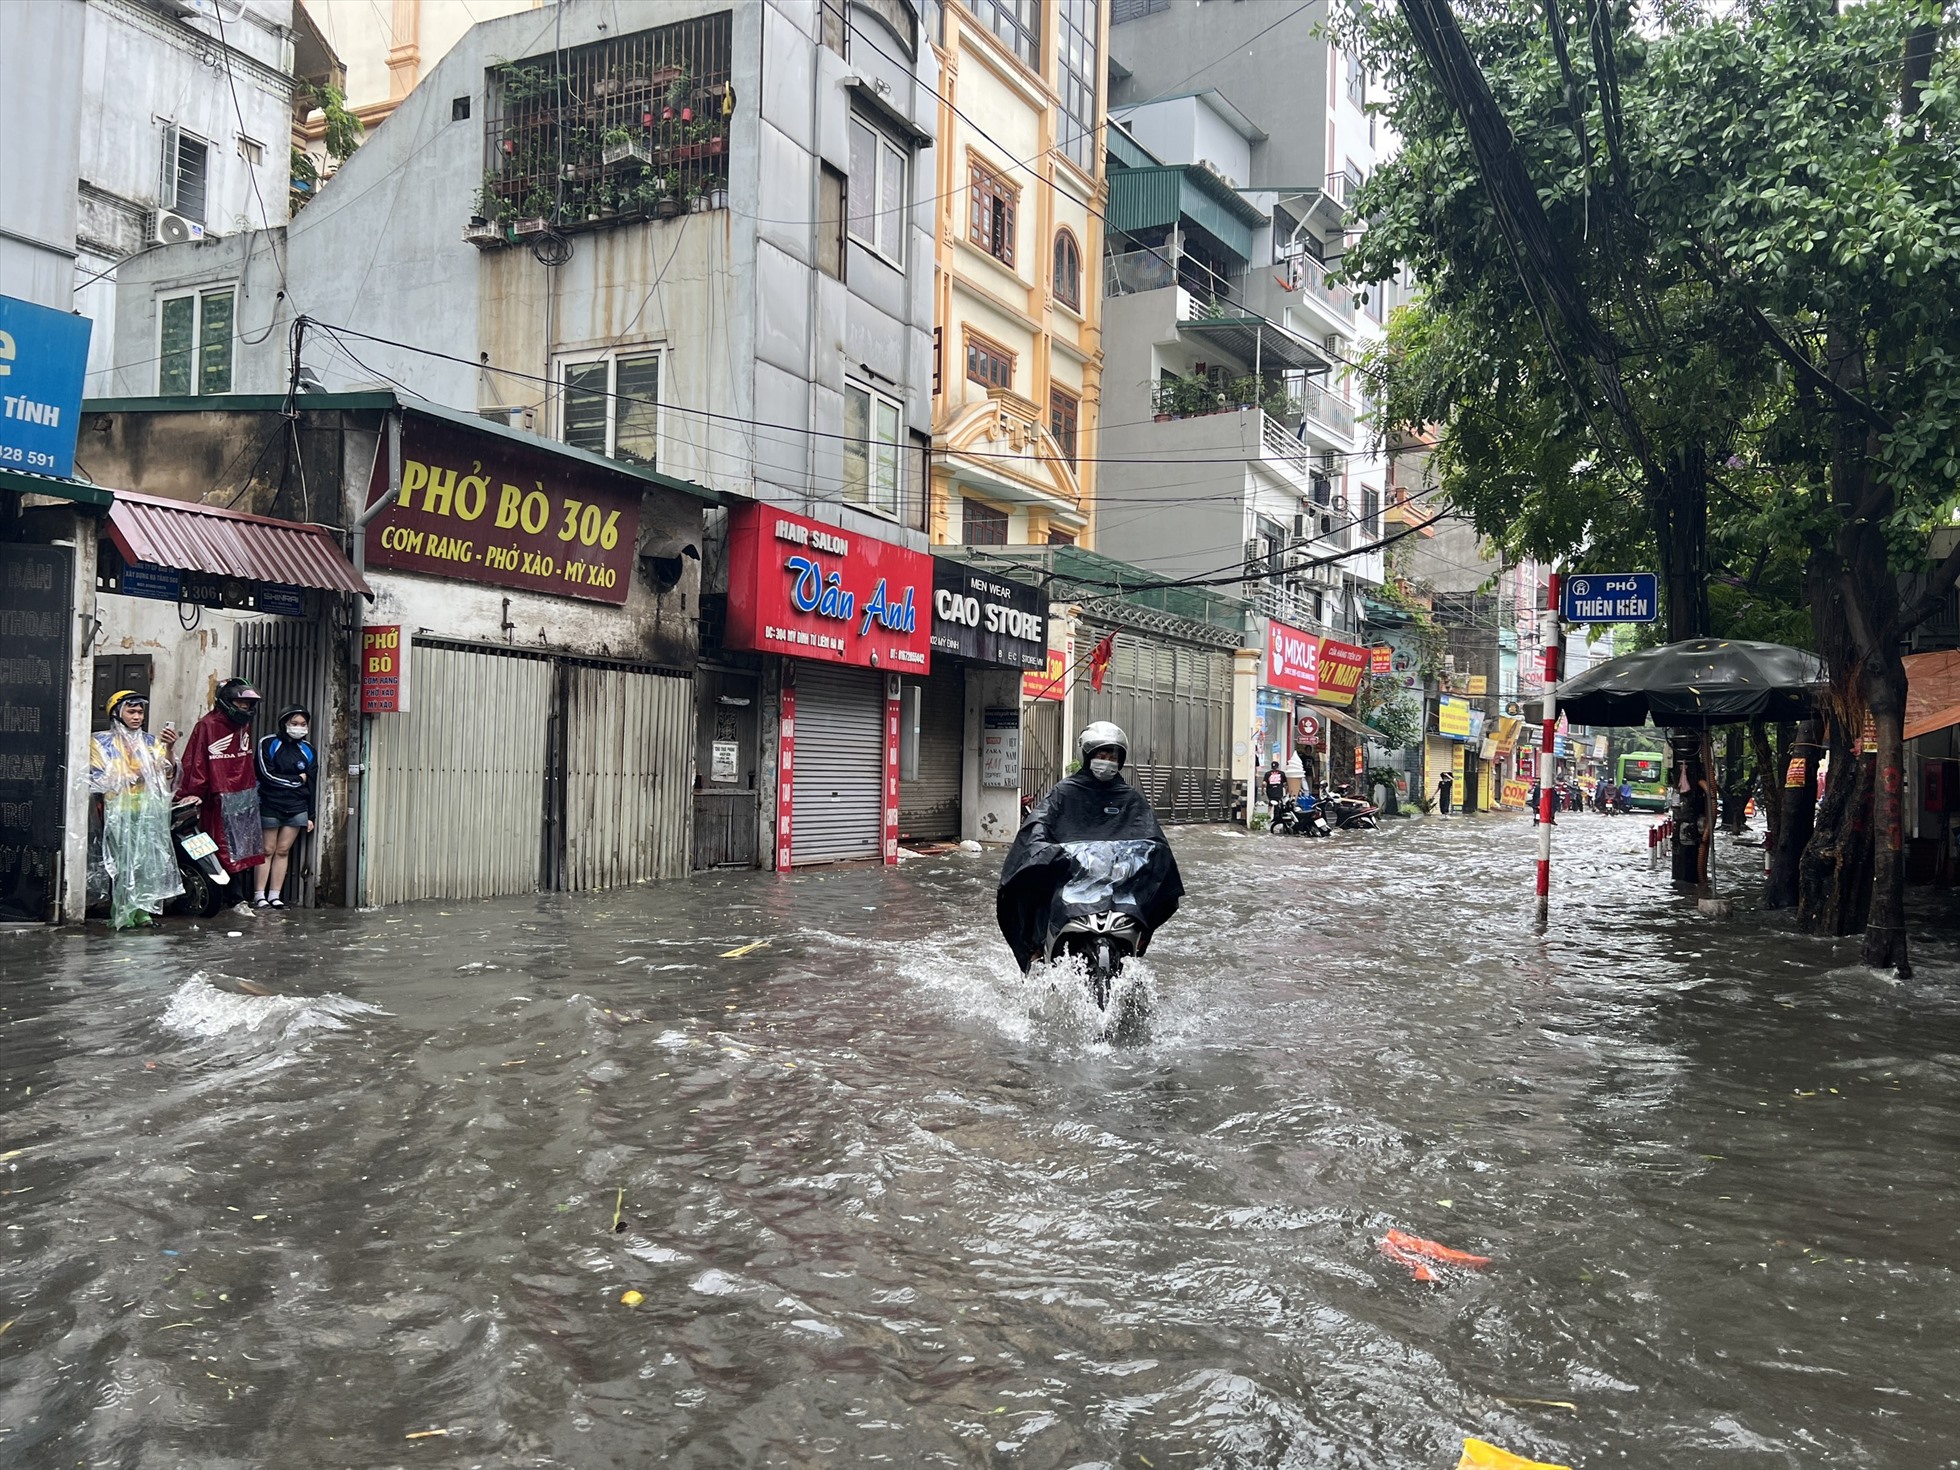 Theo ghi nhận, trận mưa lớn xảy ra vào trưa 12.6 khiến nhiều tuyến phố của Hà Nội như: Mỹ Đình, Thiên Hiền, Trần Bình, Hoàng Văn Thái,… bị ngập sâu trong nước.